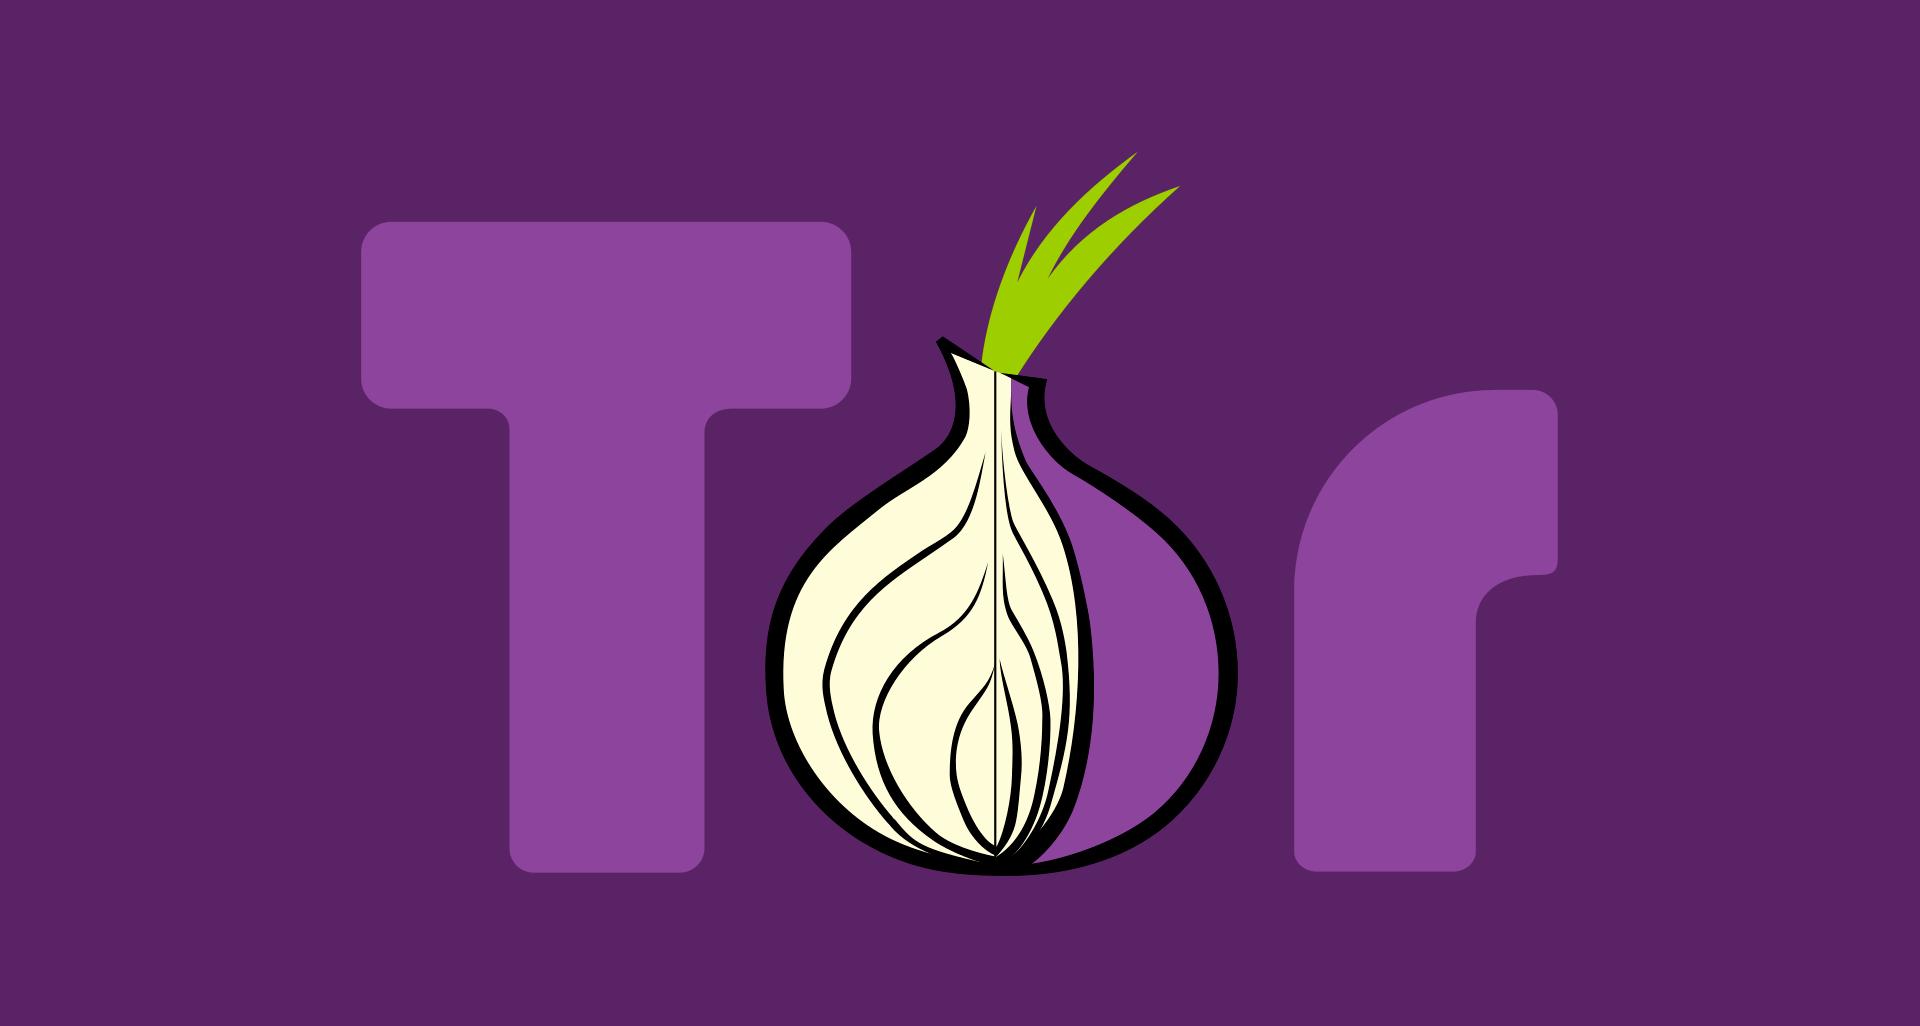 Tor browser dowland mega problem tor browser mega